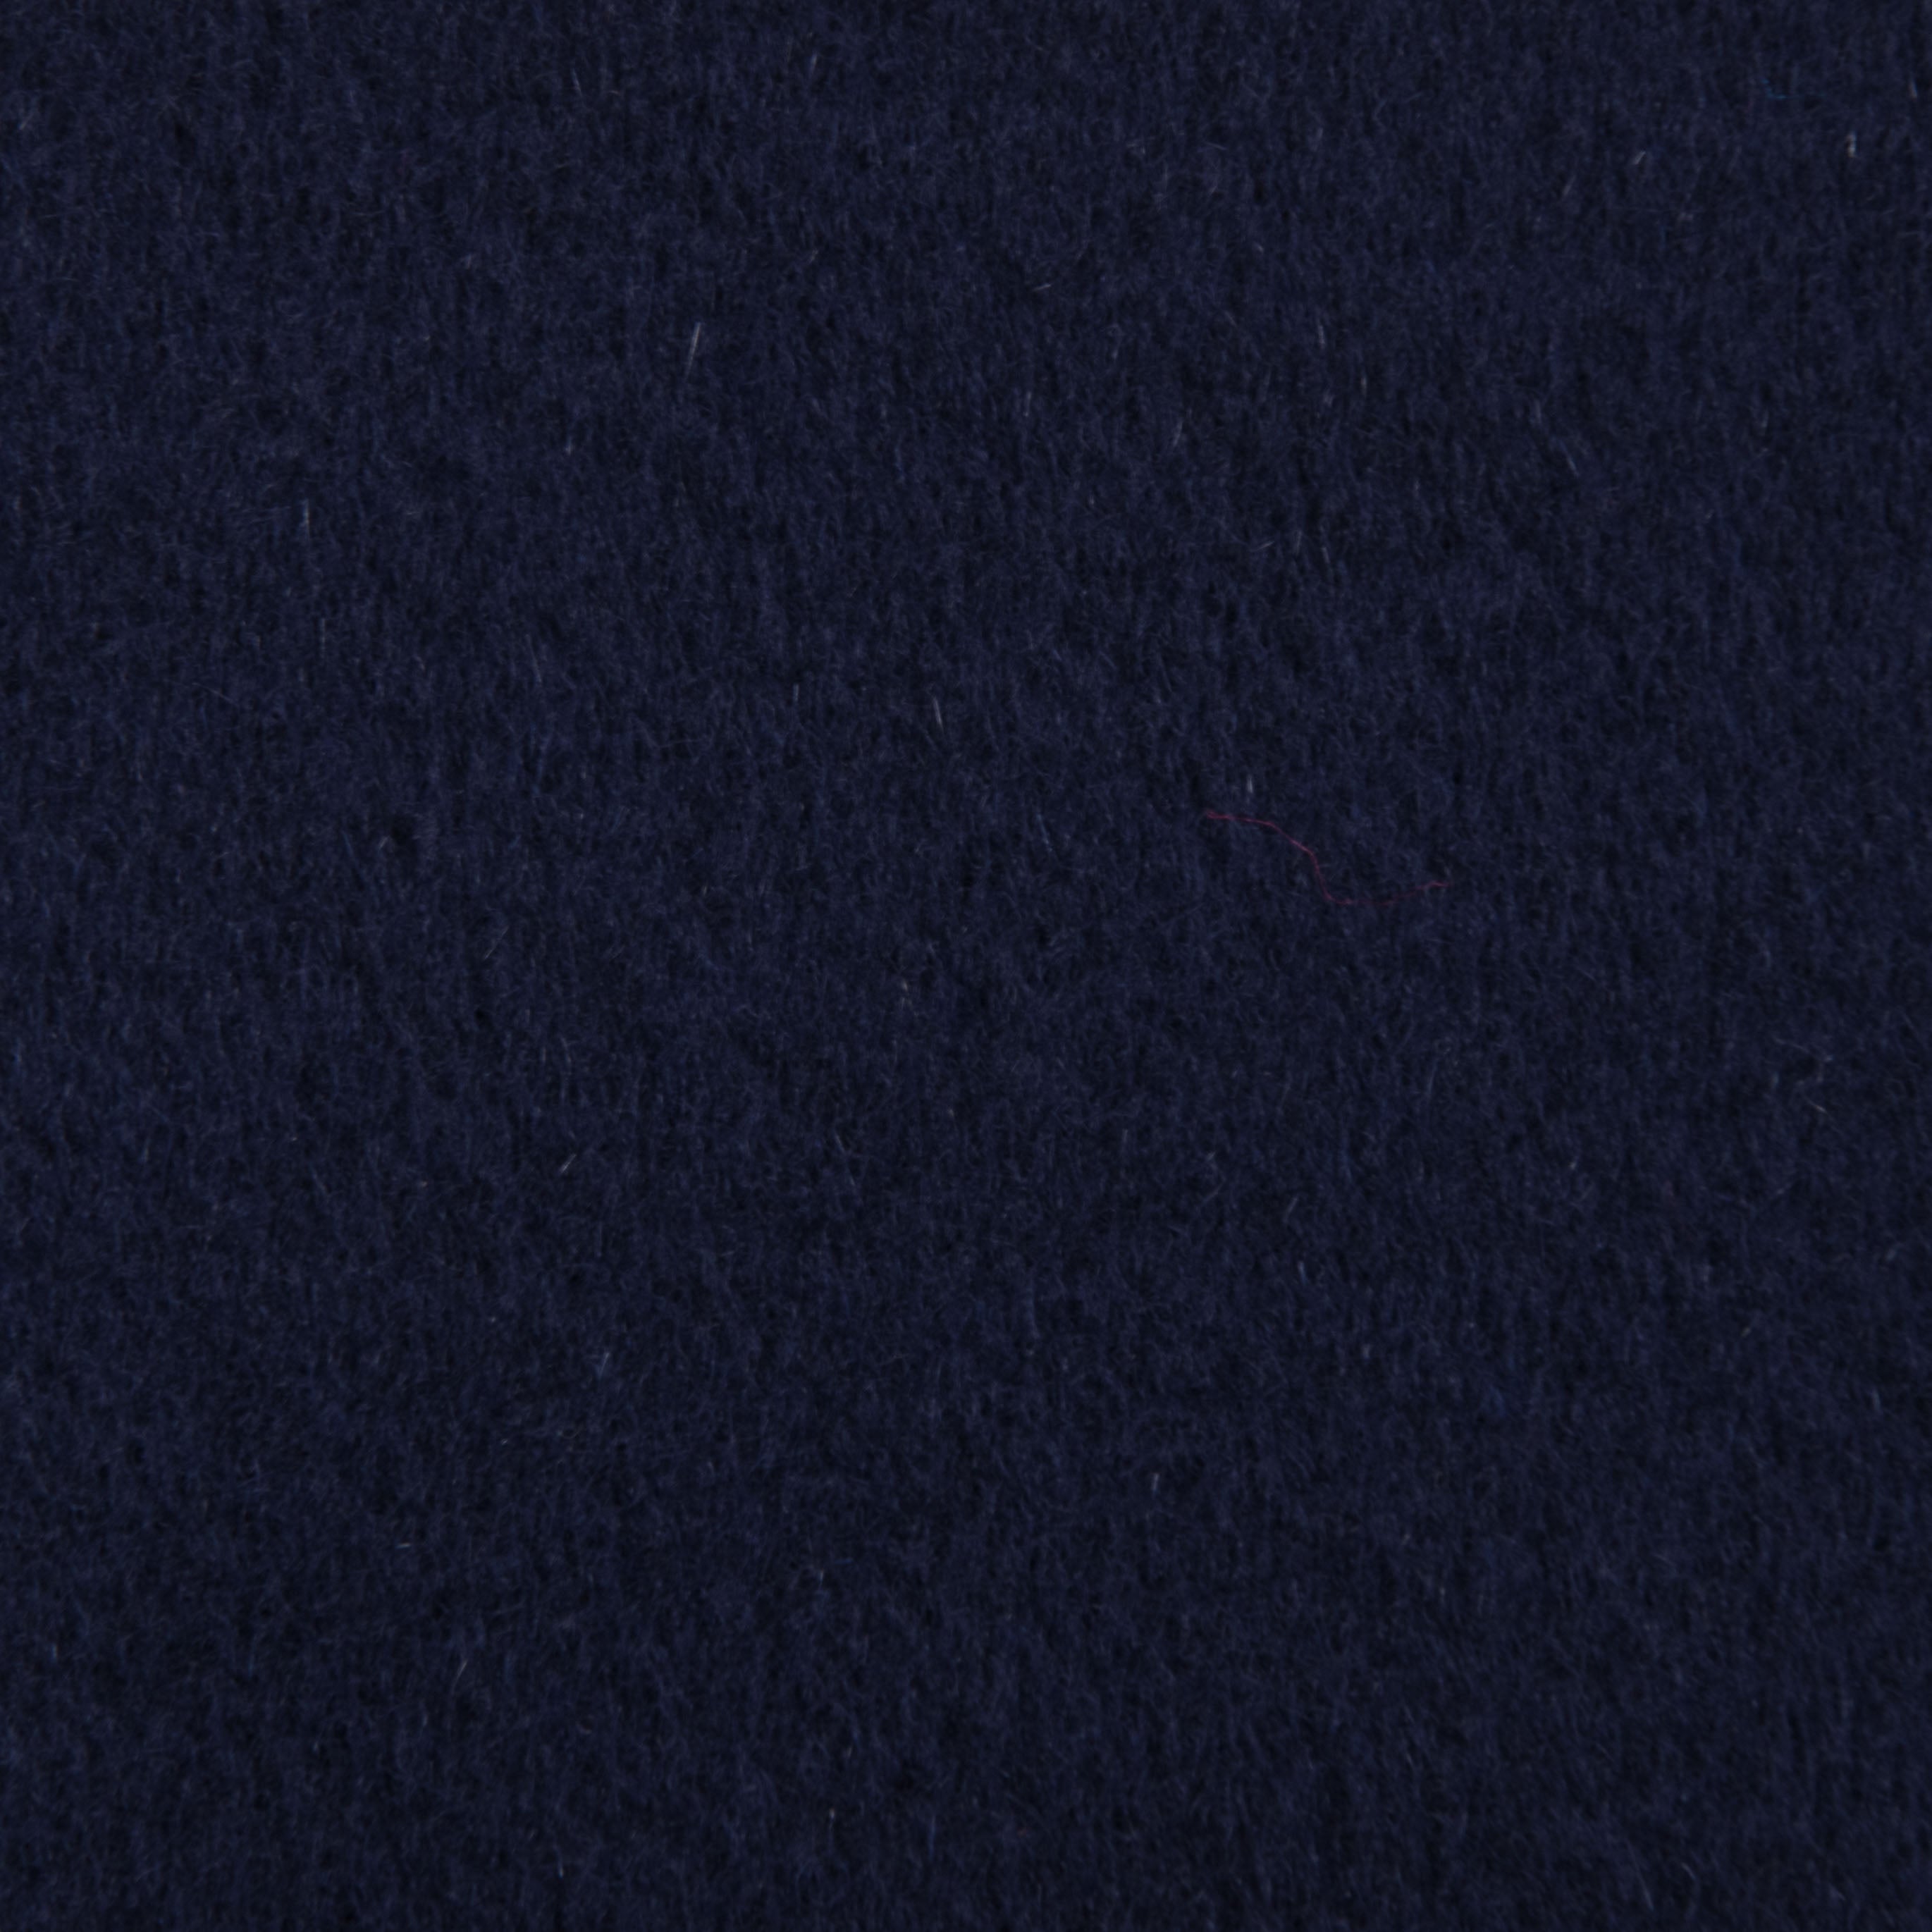 Navy Blue Coating Cashmere Blend 2647 - Fabrics4Fashion